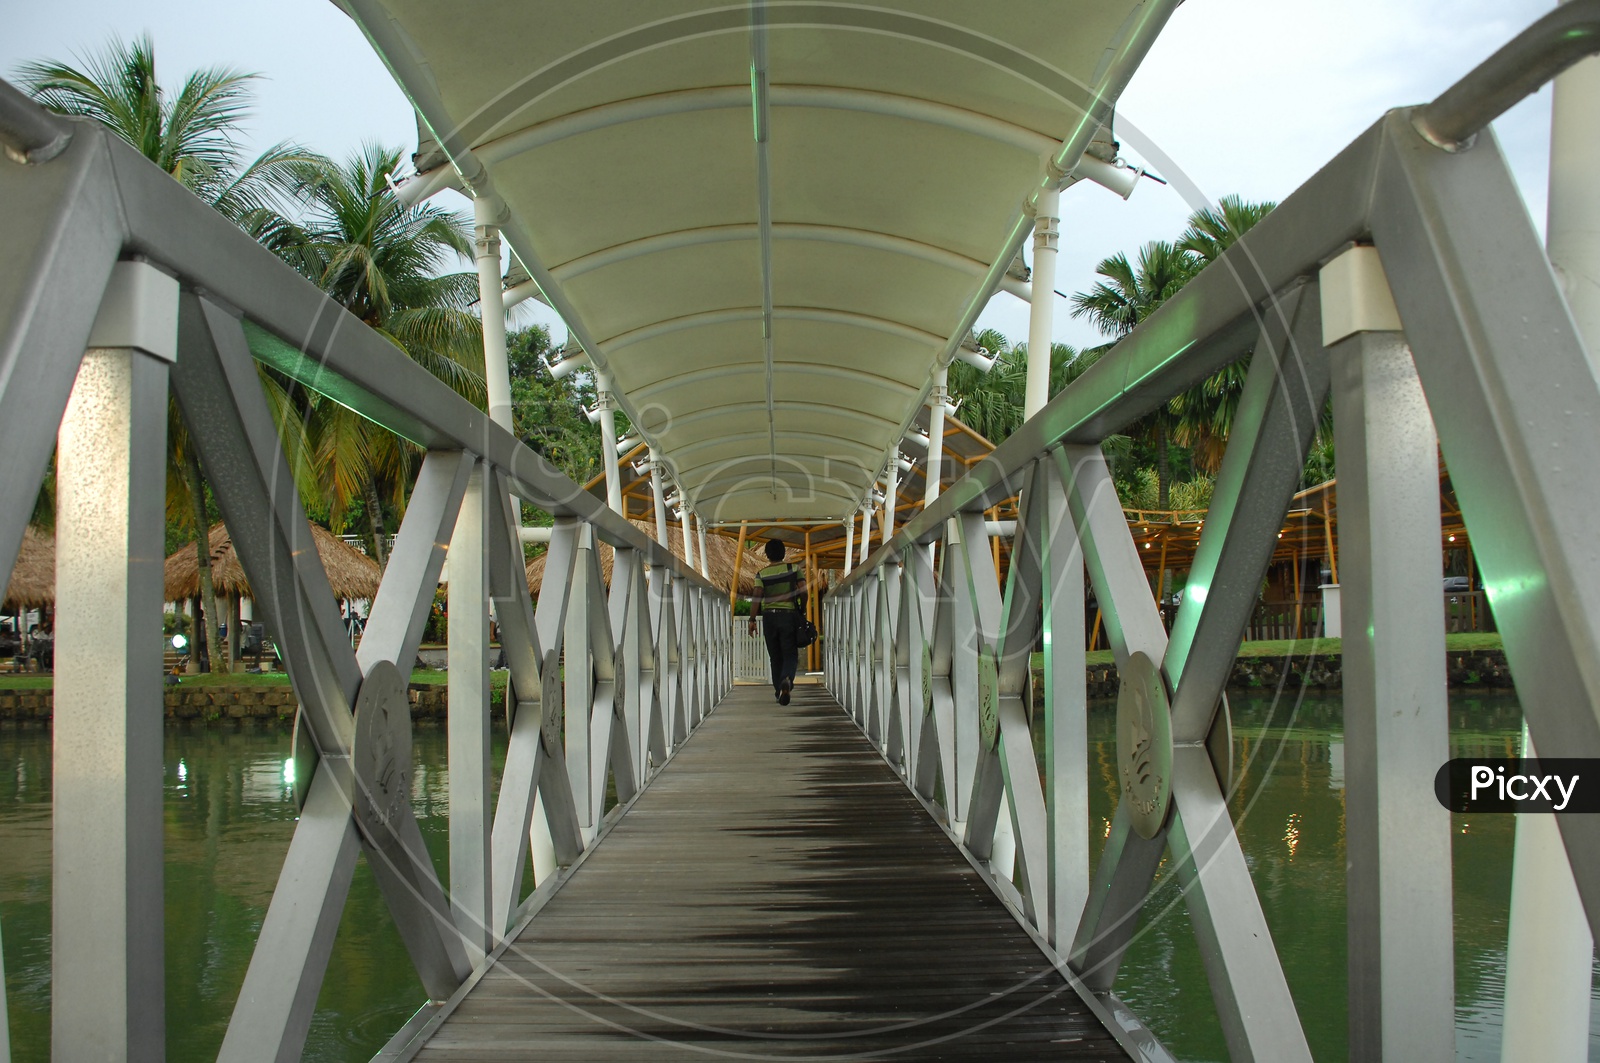 Boardwalk of the bridge alongside a resort